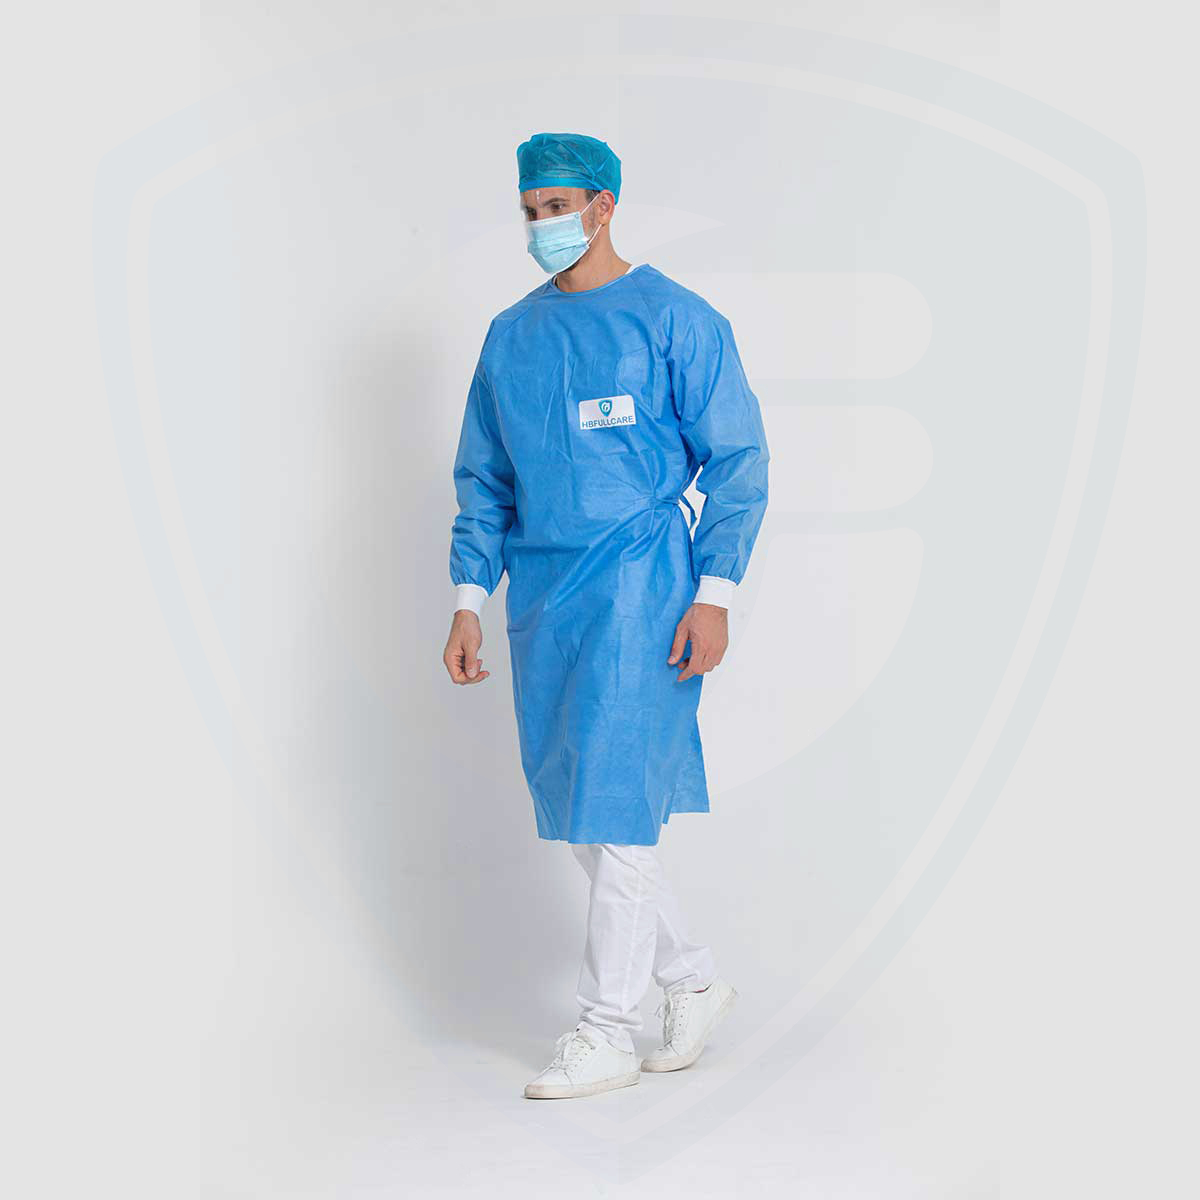 Bata quirúrgica desechable impermeable esterilizable en autoclave azul para hospitales/clínicas AAMI PB70 Level3